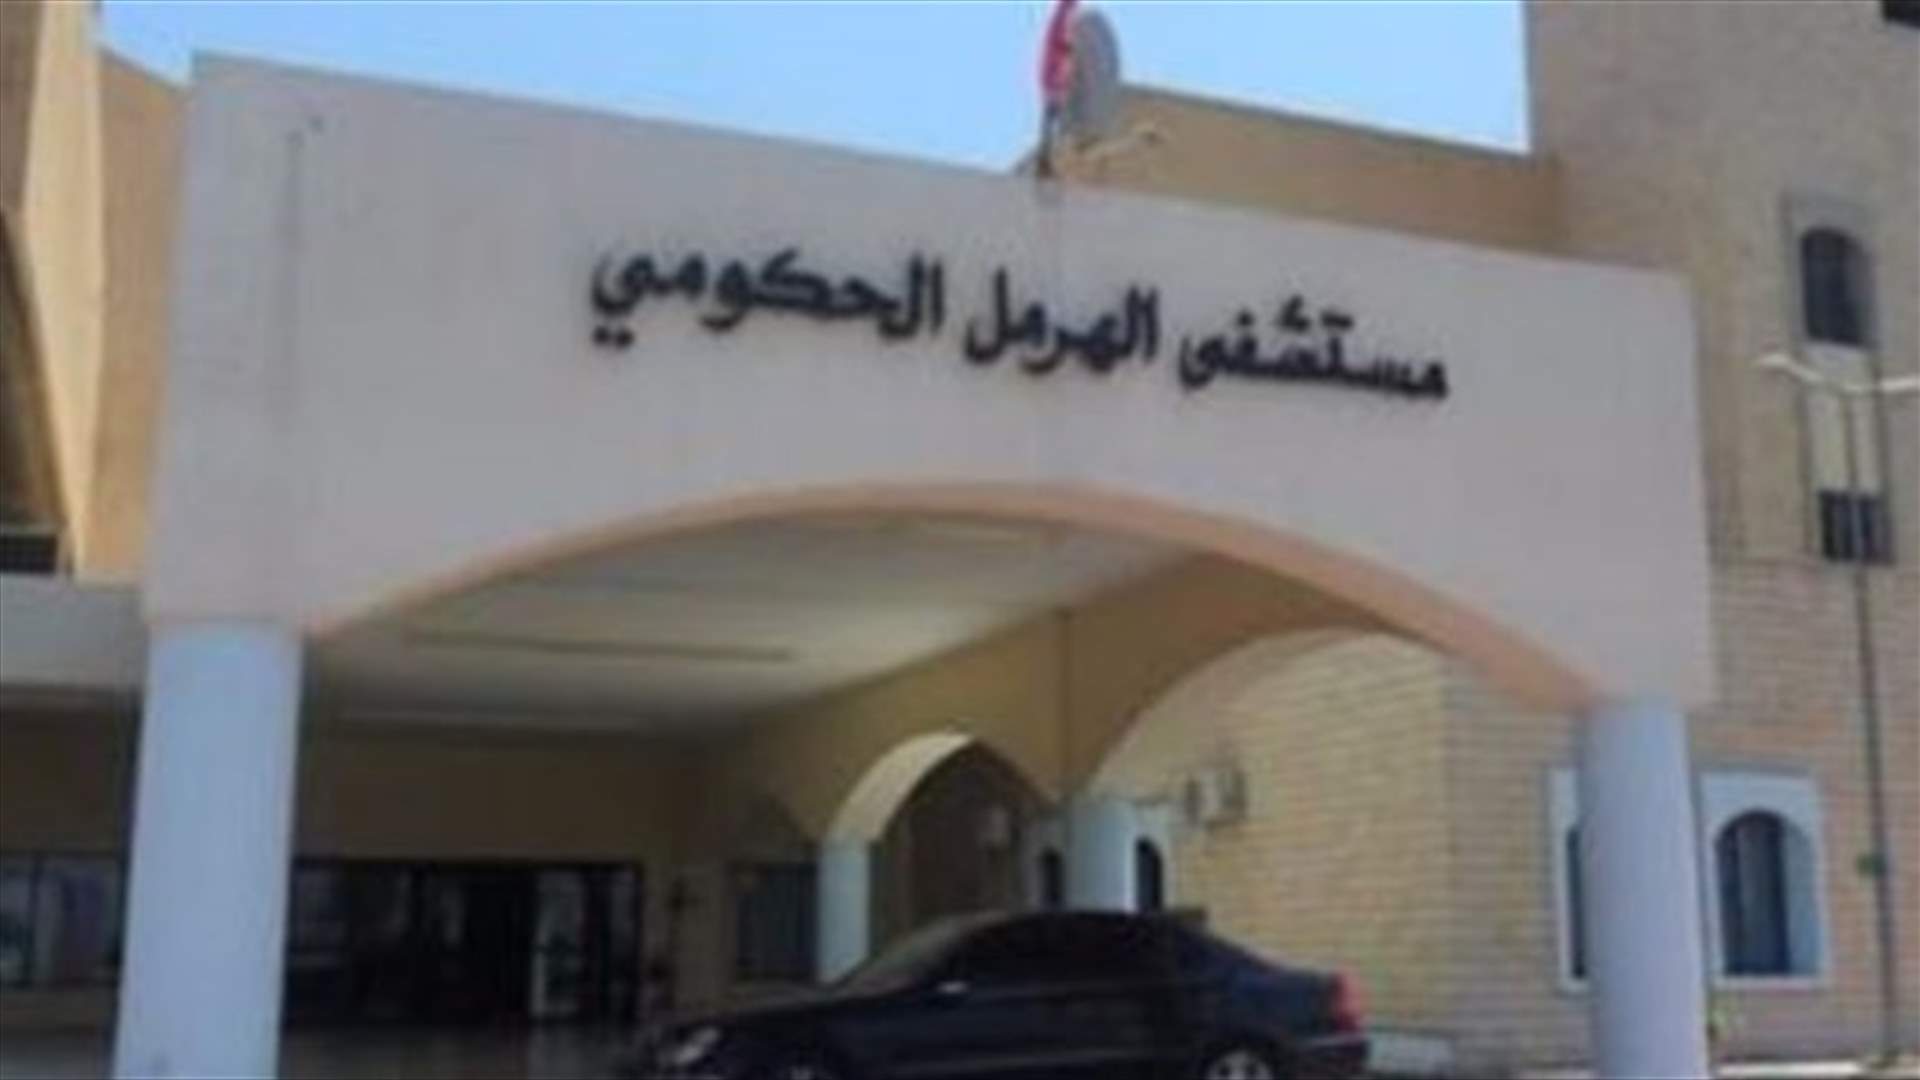 مستشفى الهرمل الحكومي مغلق أمام مصابي كورونا: عجز في الإمكانيات أم إمبراطورية خاصة؟ (الاخبار)